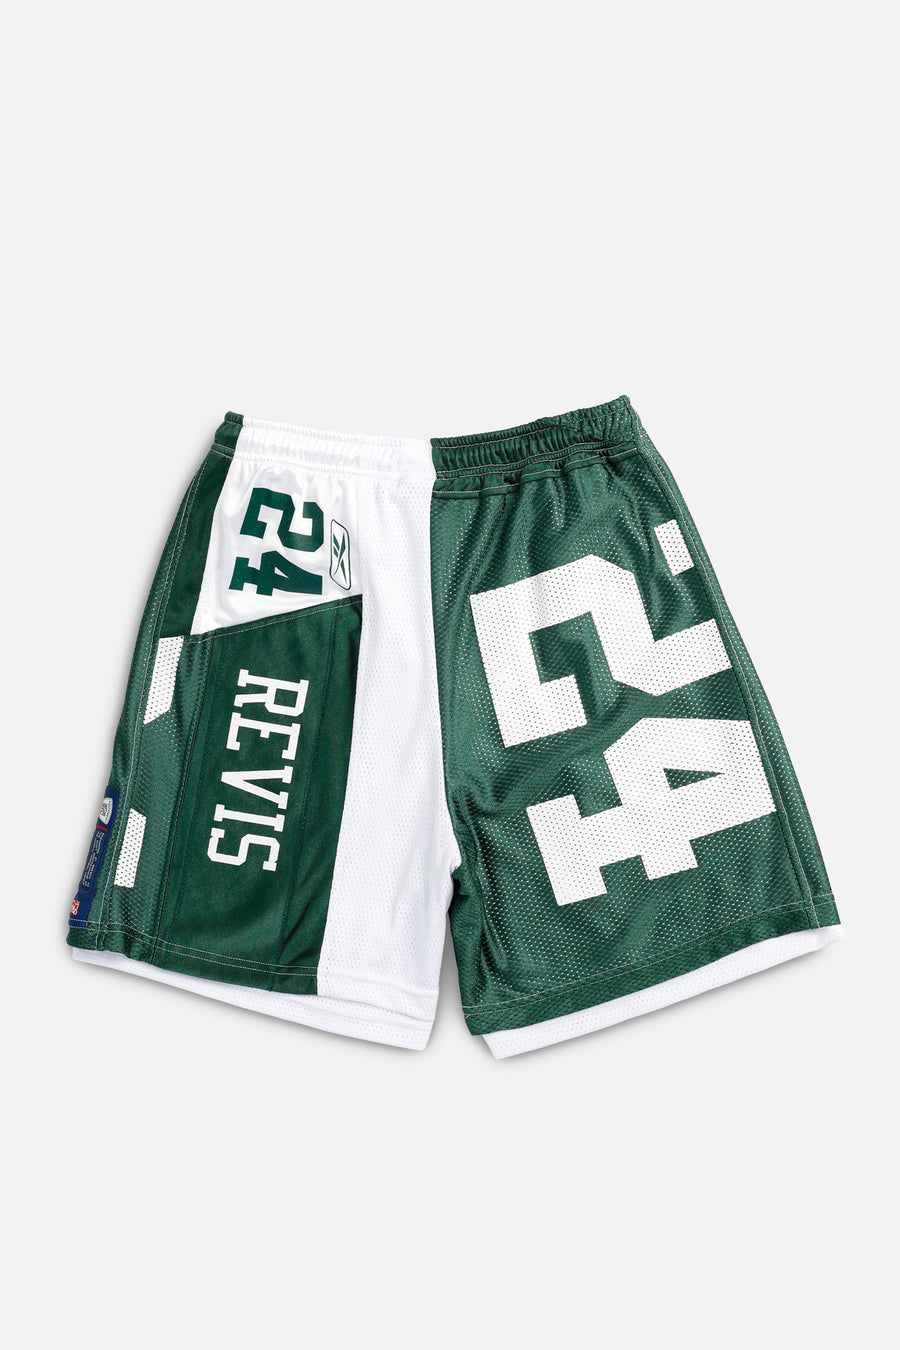 Unisex Rework NY Jets NFL Jersey Shorts - L